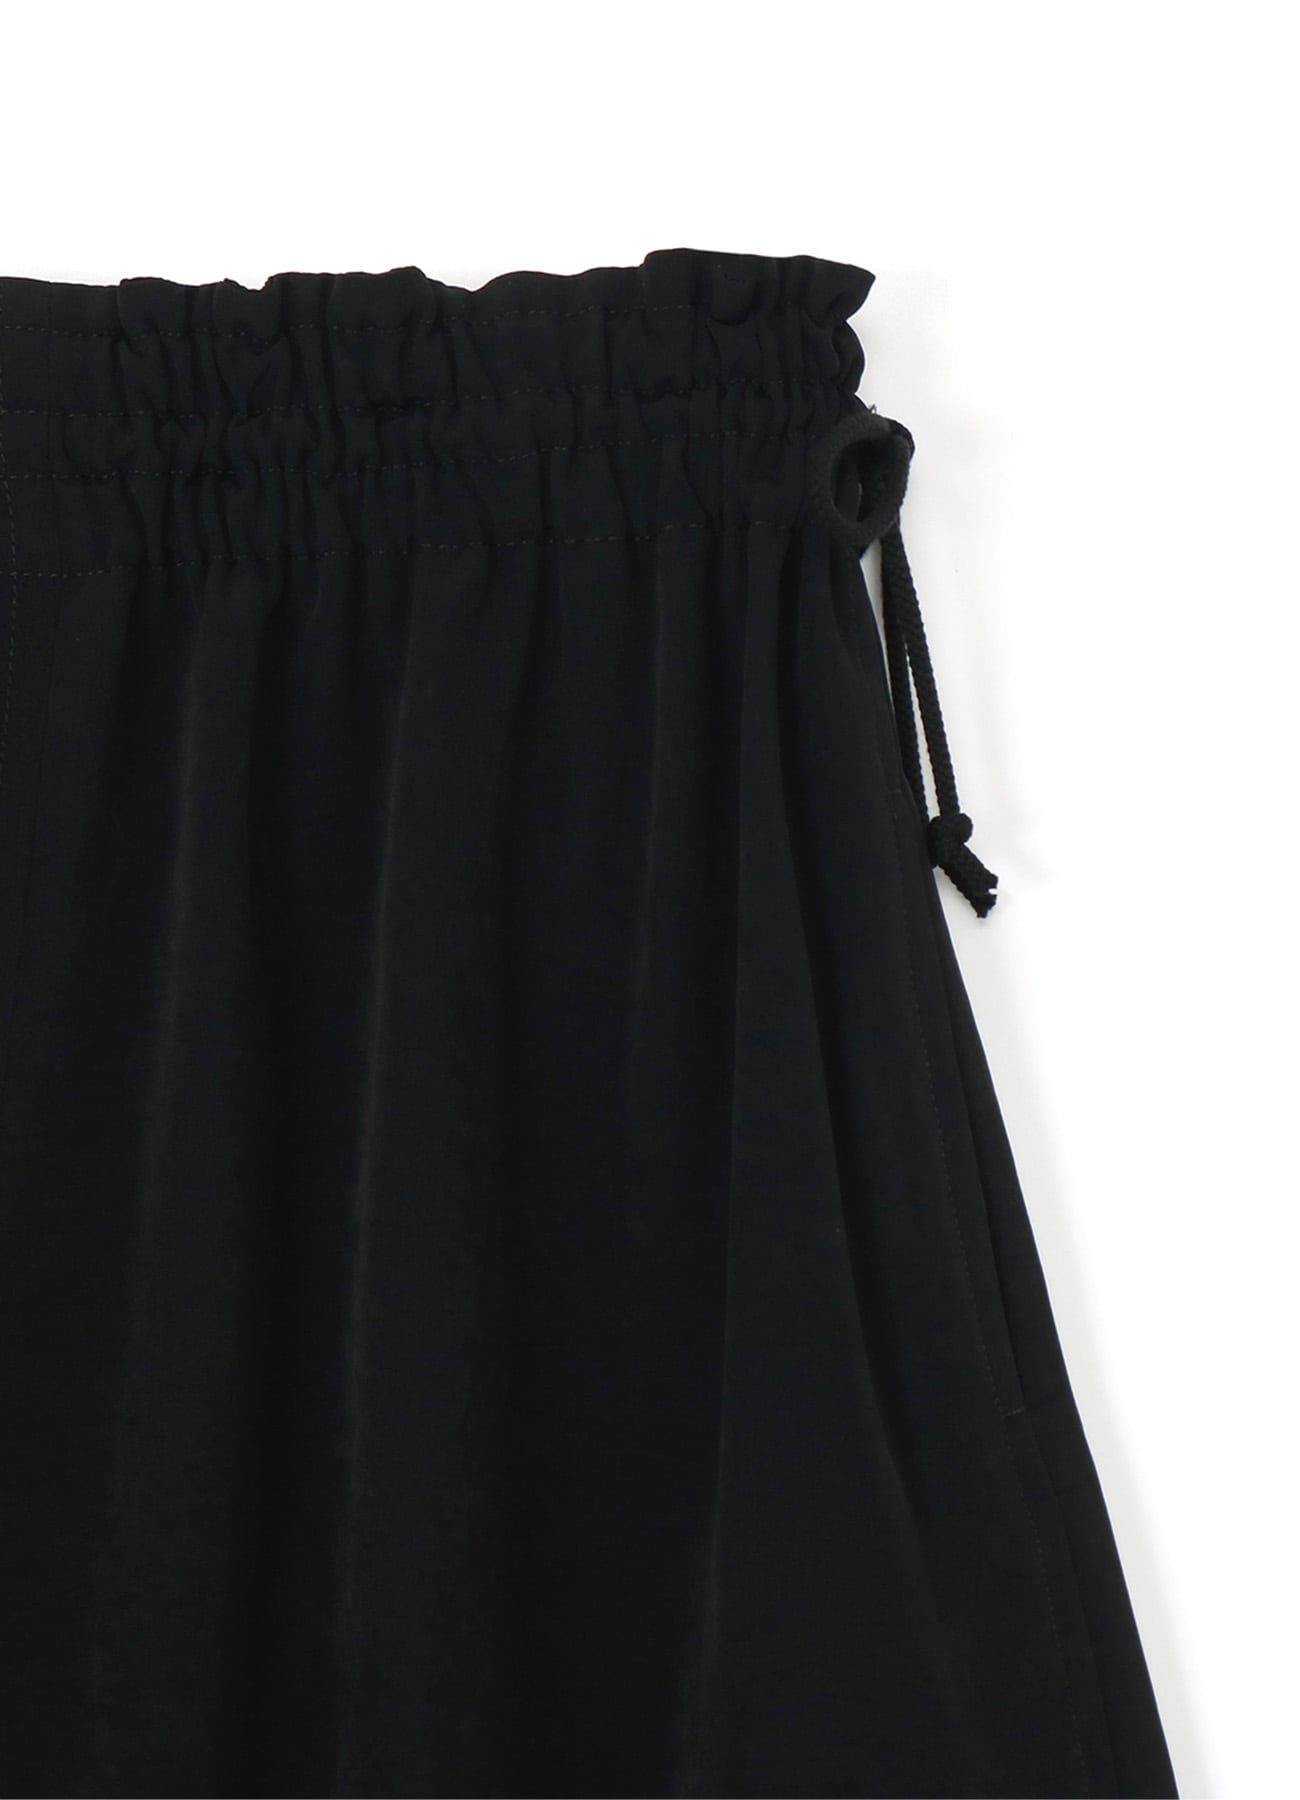 375センチワタリY's ワイズ Asymmetrical Wide Pants アシンメトリー スリットワイドパンツ YL-P26-500 ブラック レディース